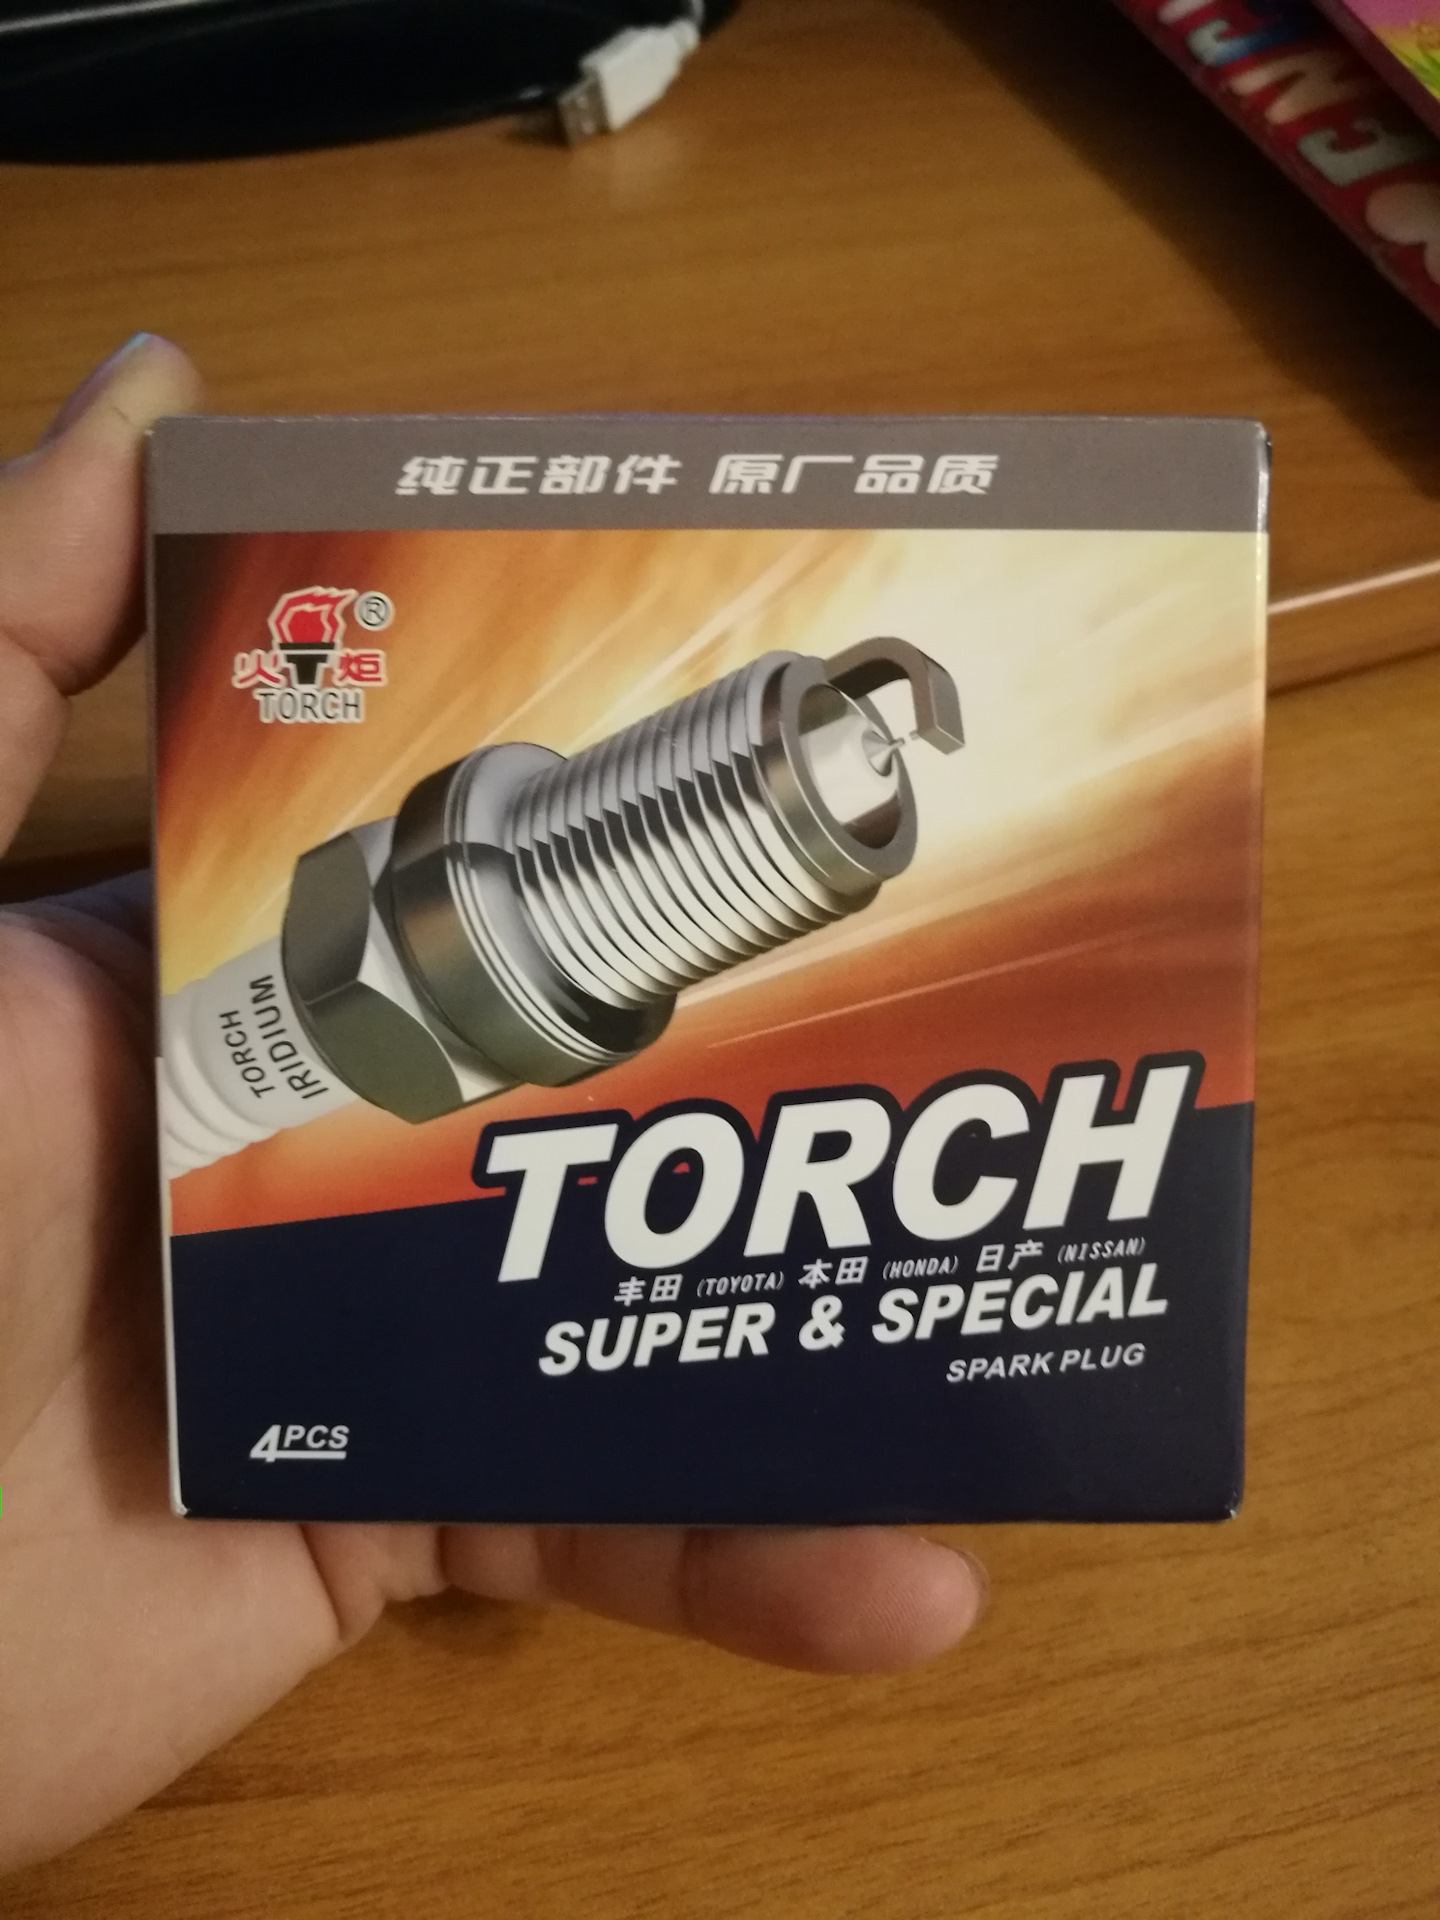 Свечи ховер н3. Свечи Ховер 5 Курск. Свечи Torch super and Special описание.